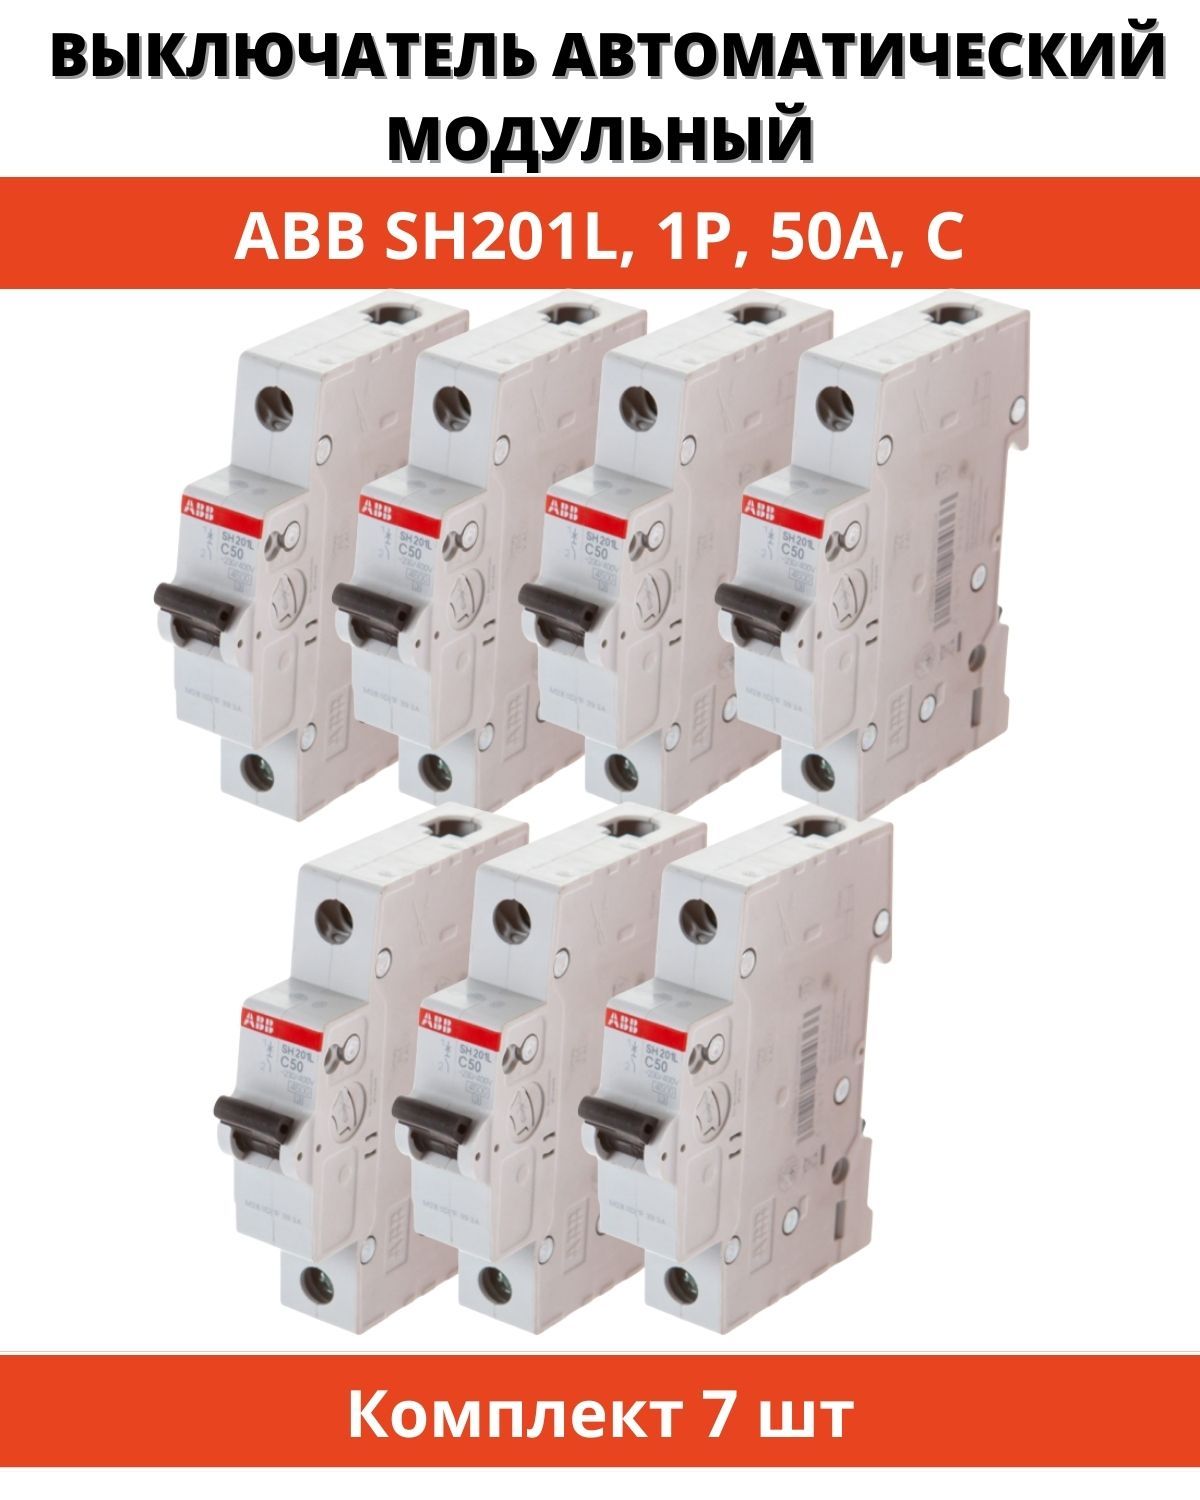 Купить автоматический выключатель abb. Автоматический выключатель ABB sh201l. АВВ sh201l c10. Автоматический выключатель ABB sh201l c10. Автомат ABB ms116.